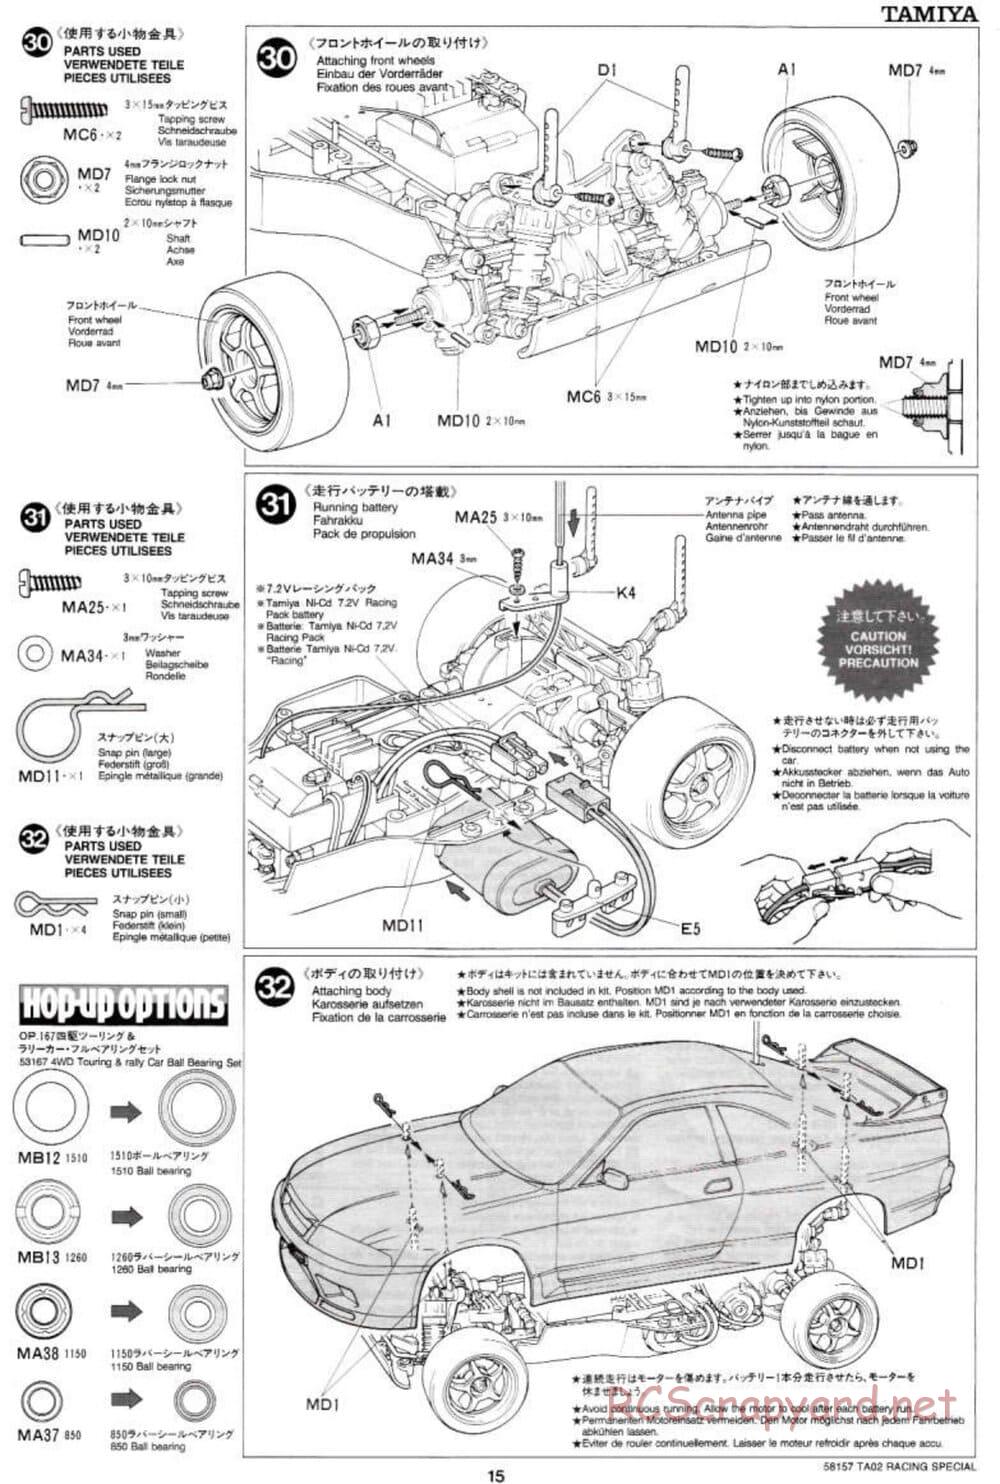 Tamiya - TA-02RS Chassis - Manual - Page 15